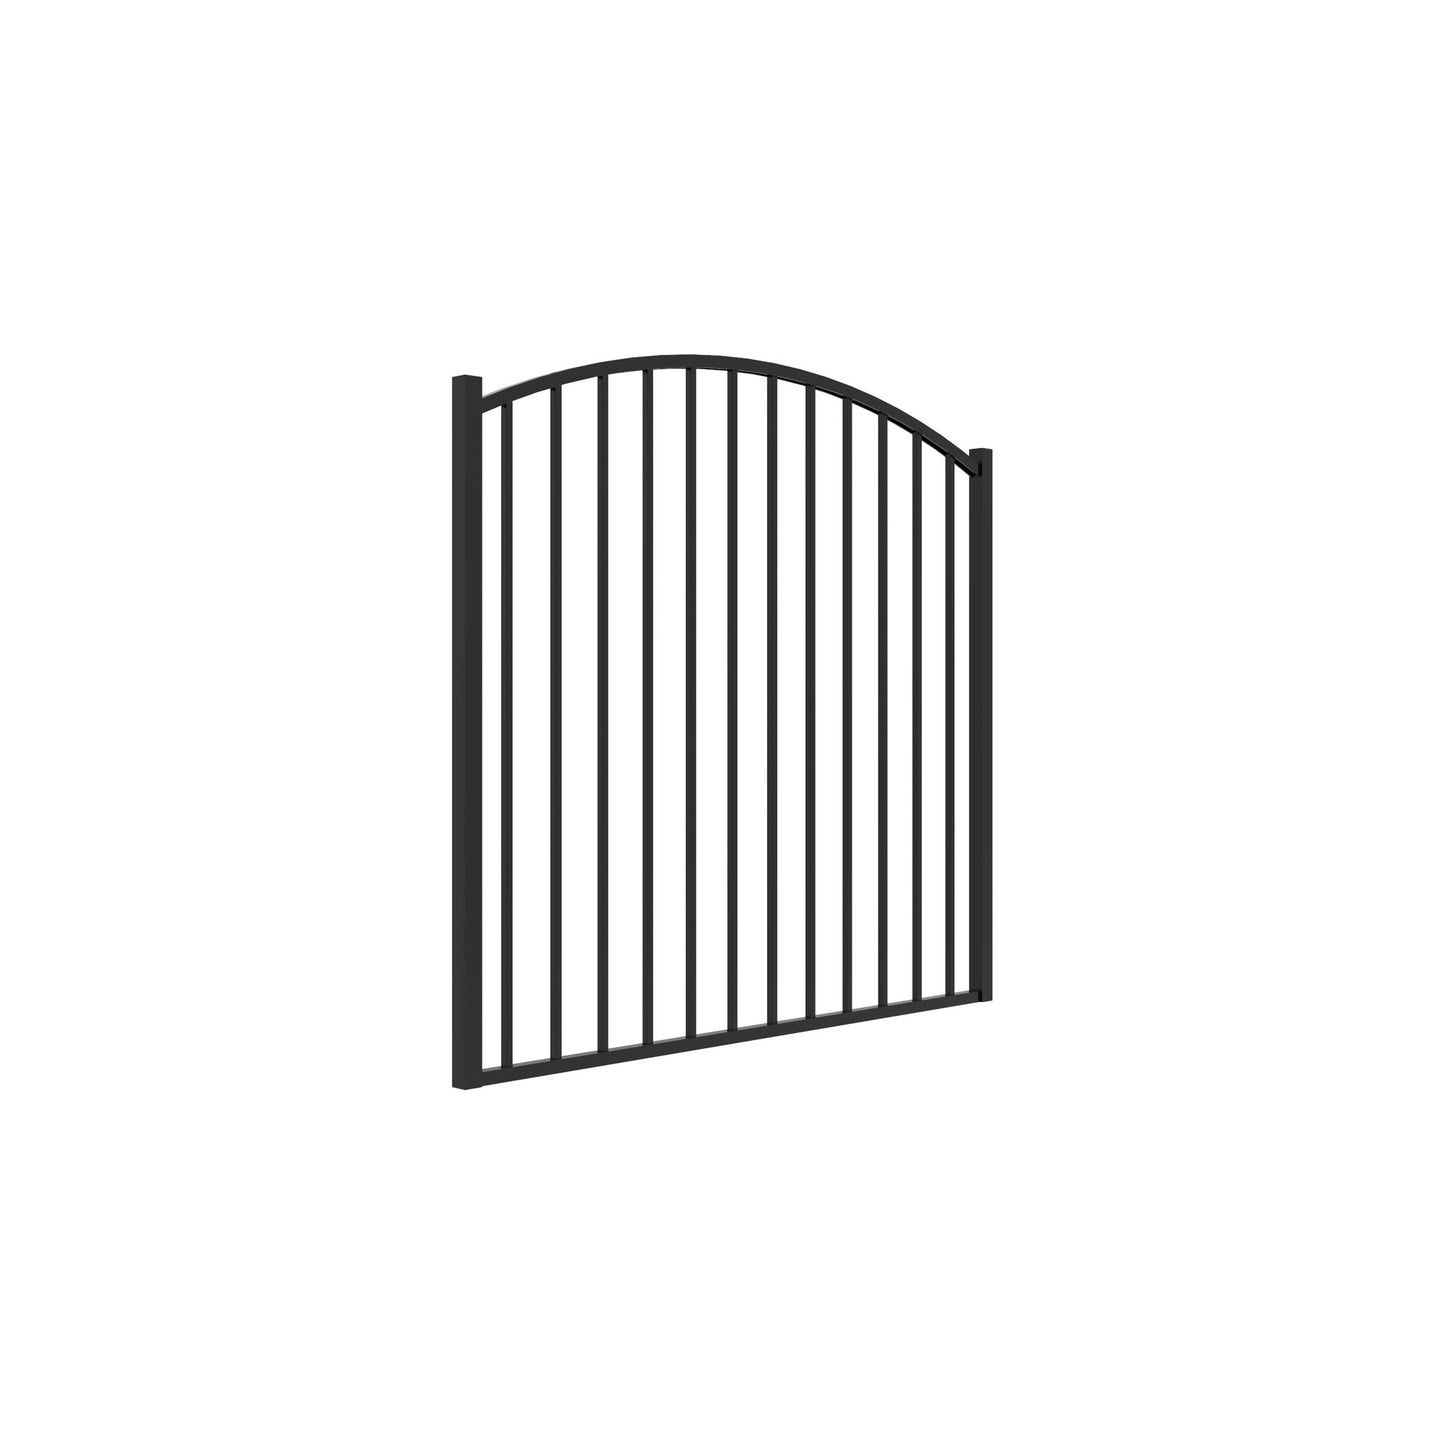 Bedrock Harbor Series - Arched Gate - 4' x 5'-Aluminum Fence Gates-ActiveYards-Black-FenceCenter